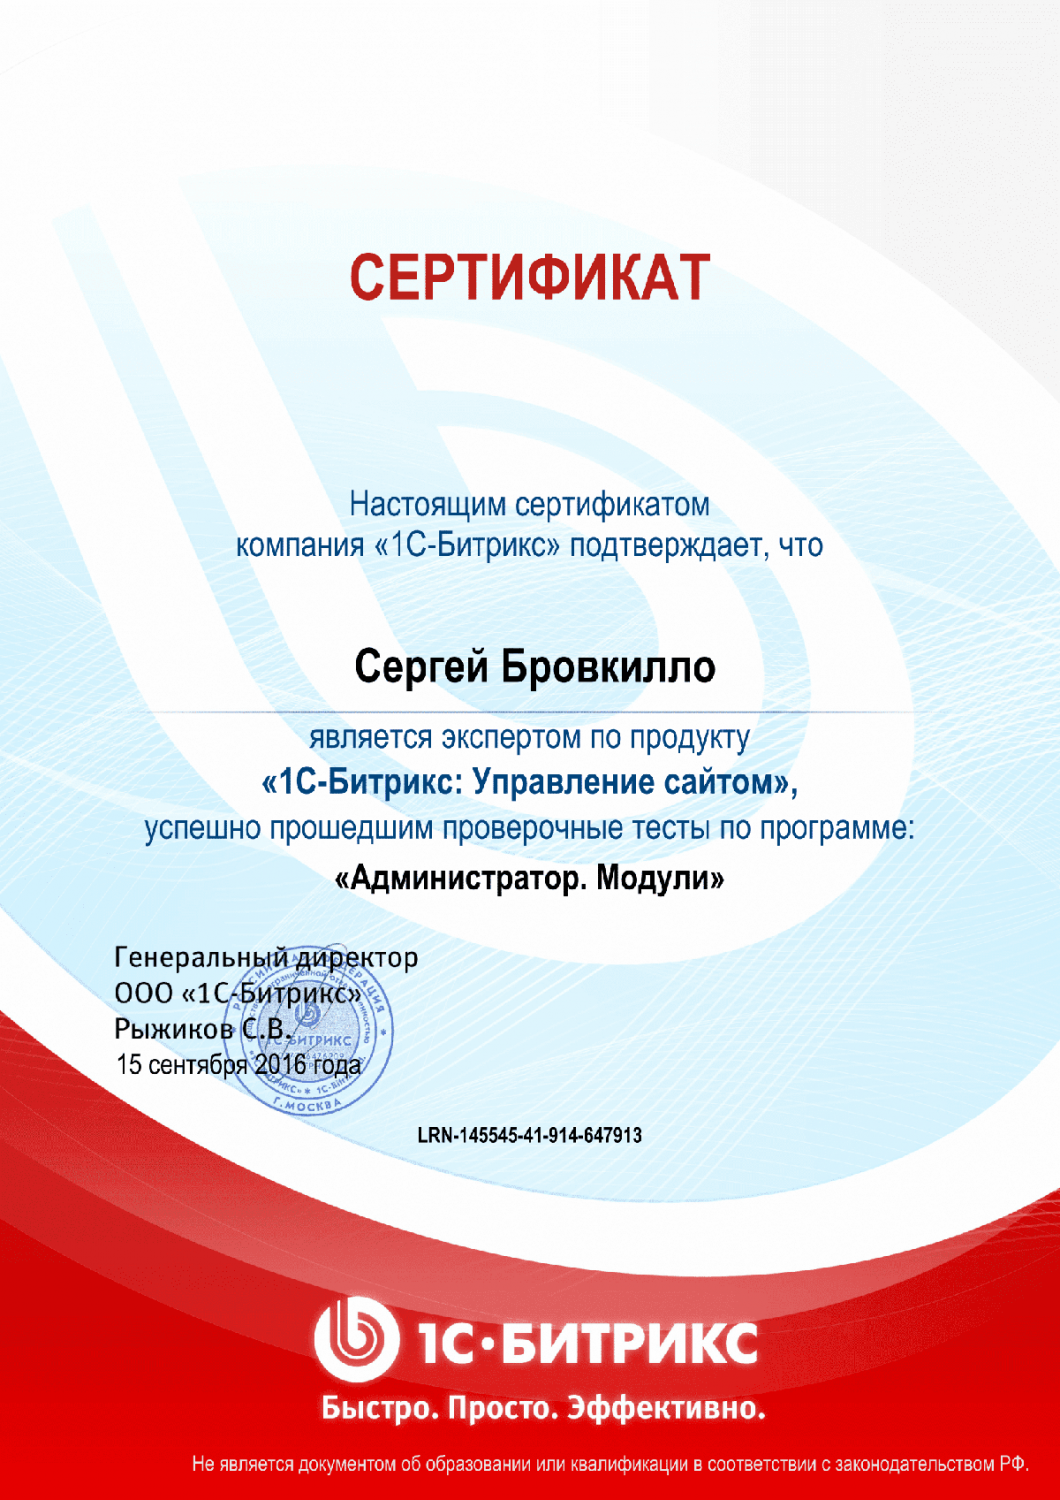 Сертификат эксперта по программе "Администратор. Модули" в Нижнего Новгорода